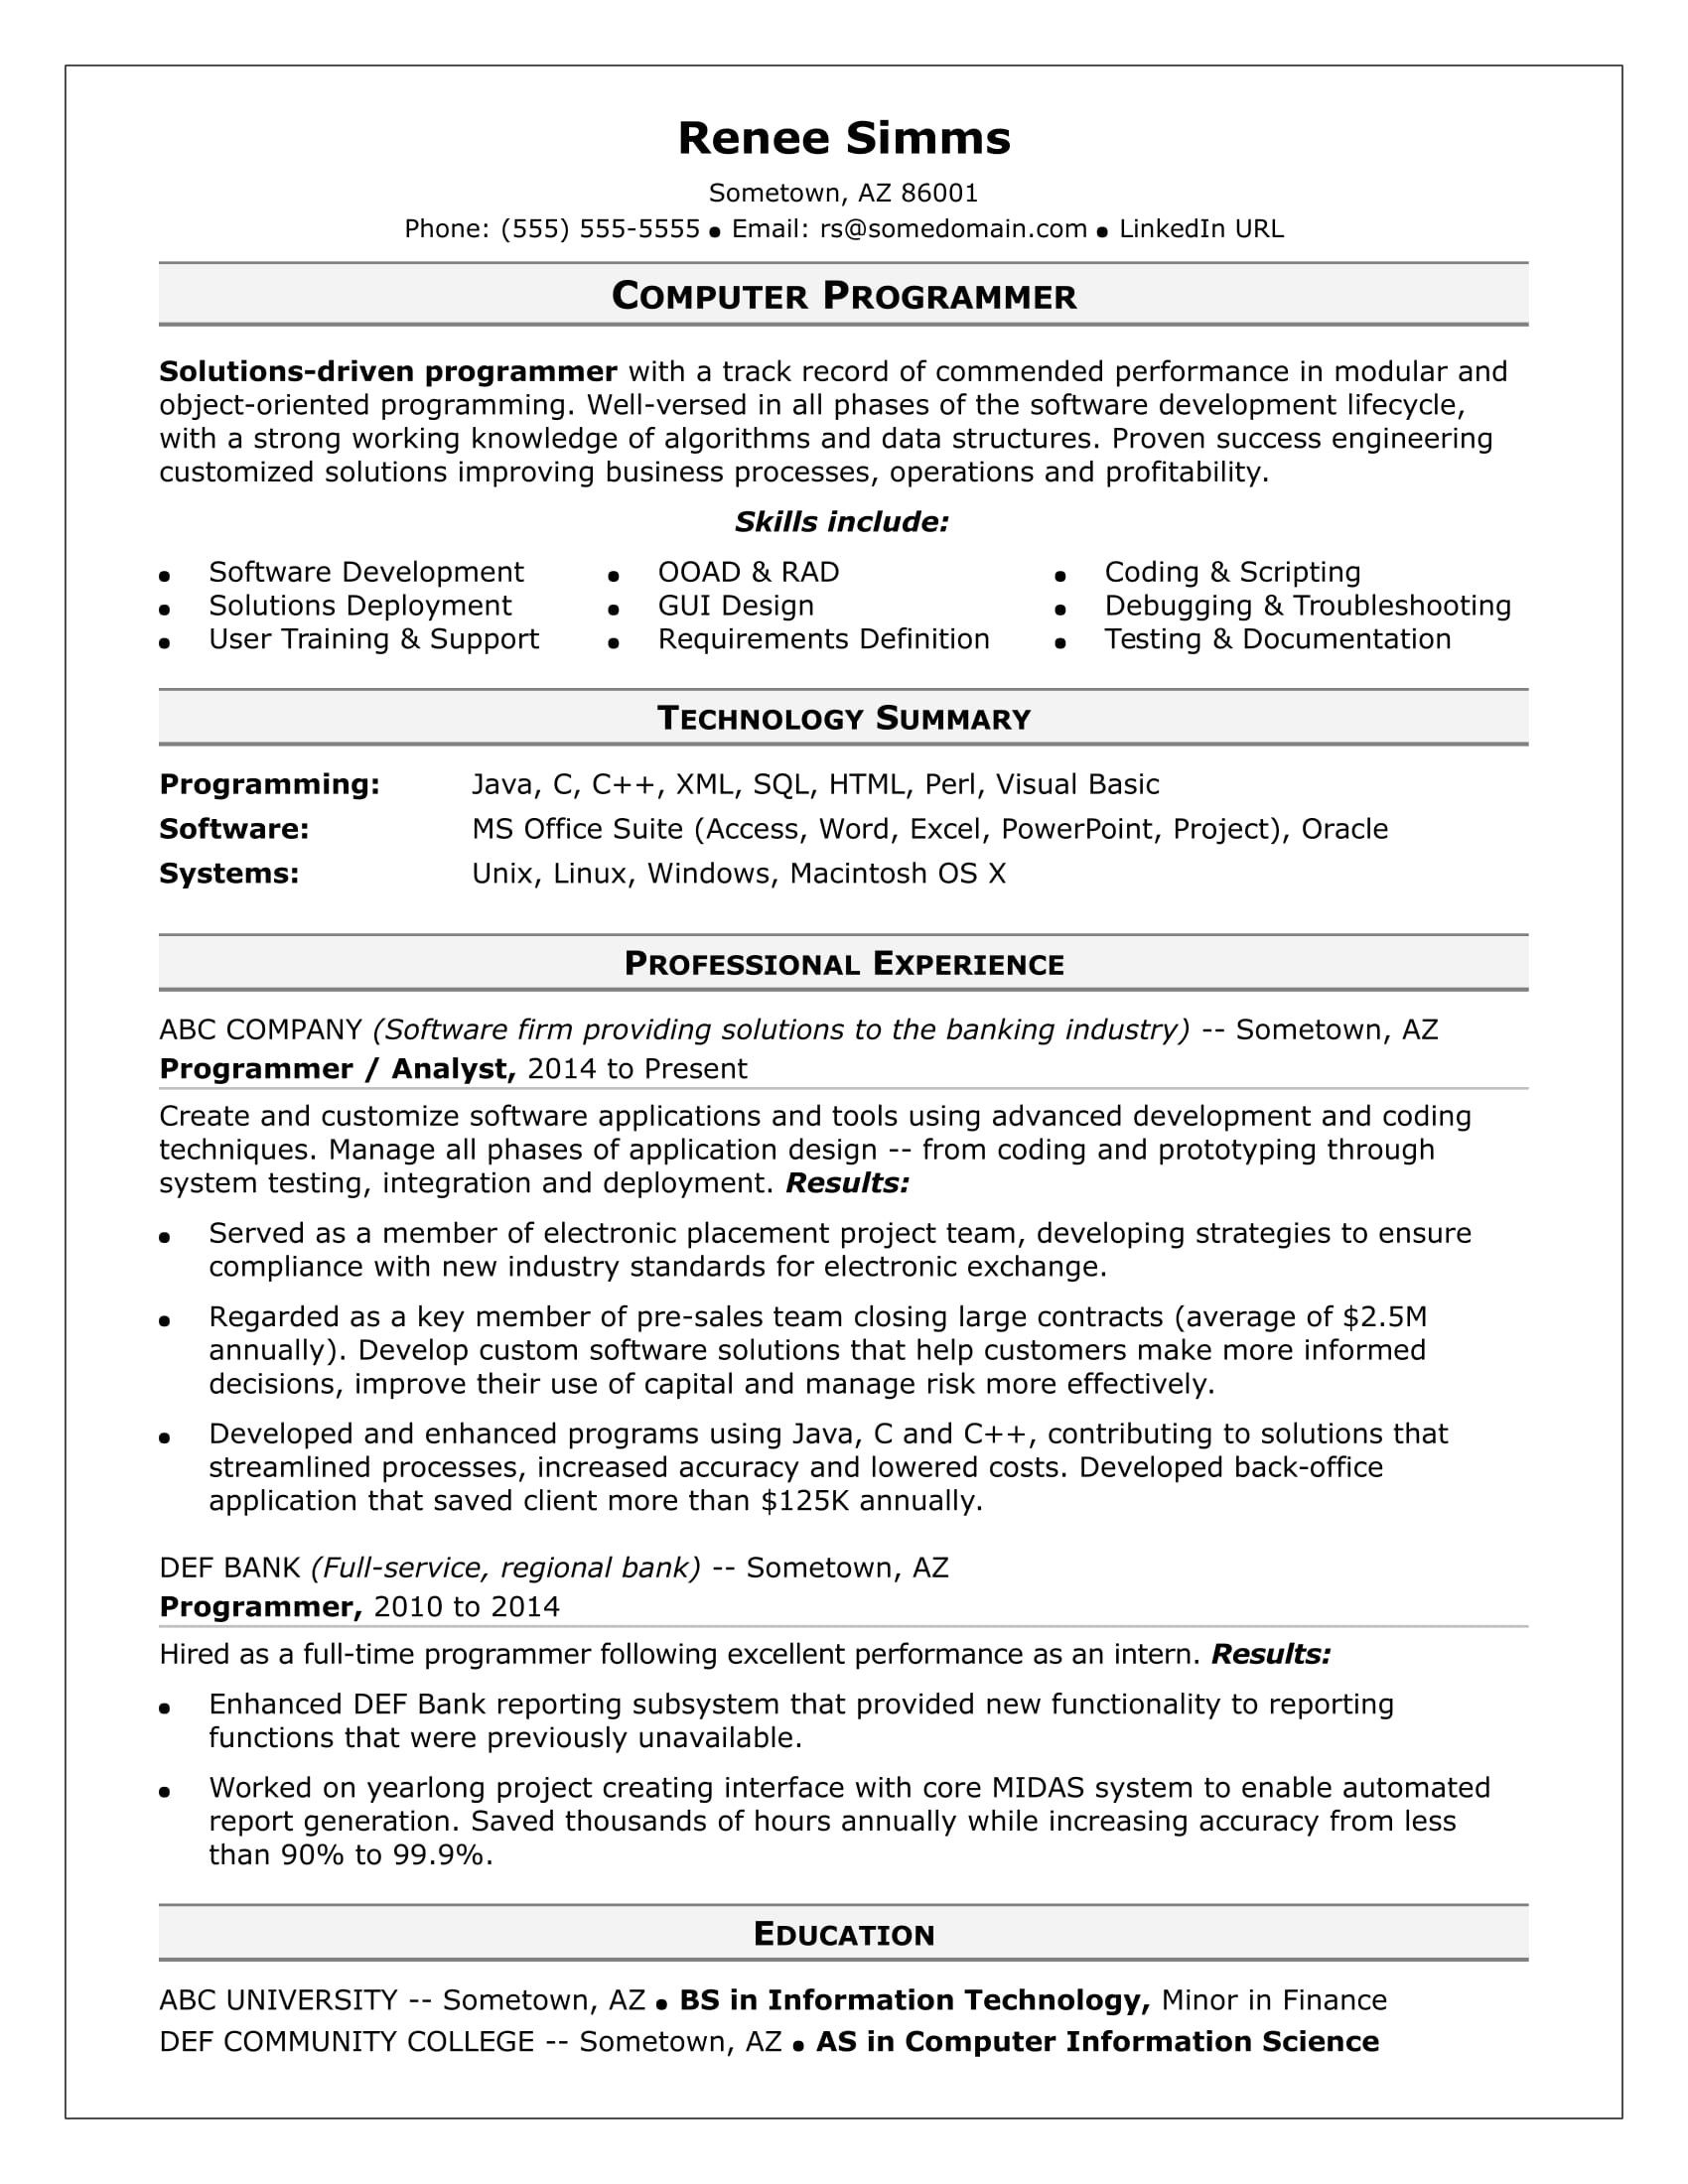 sample resume computer programmer midlevel